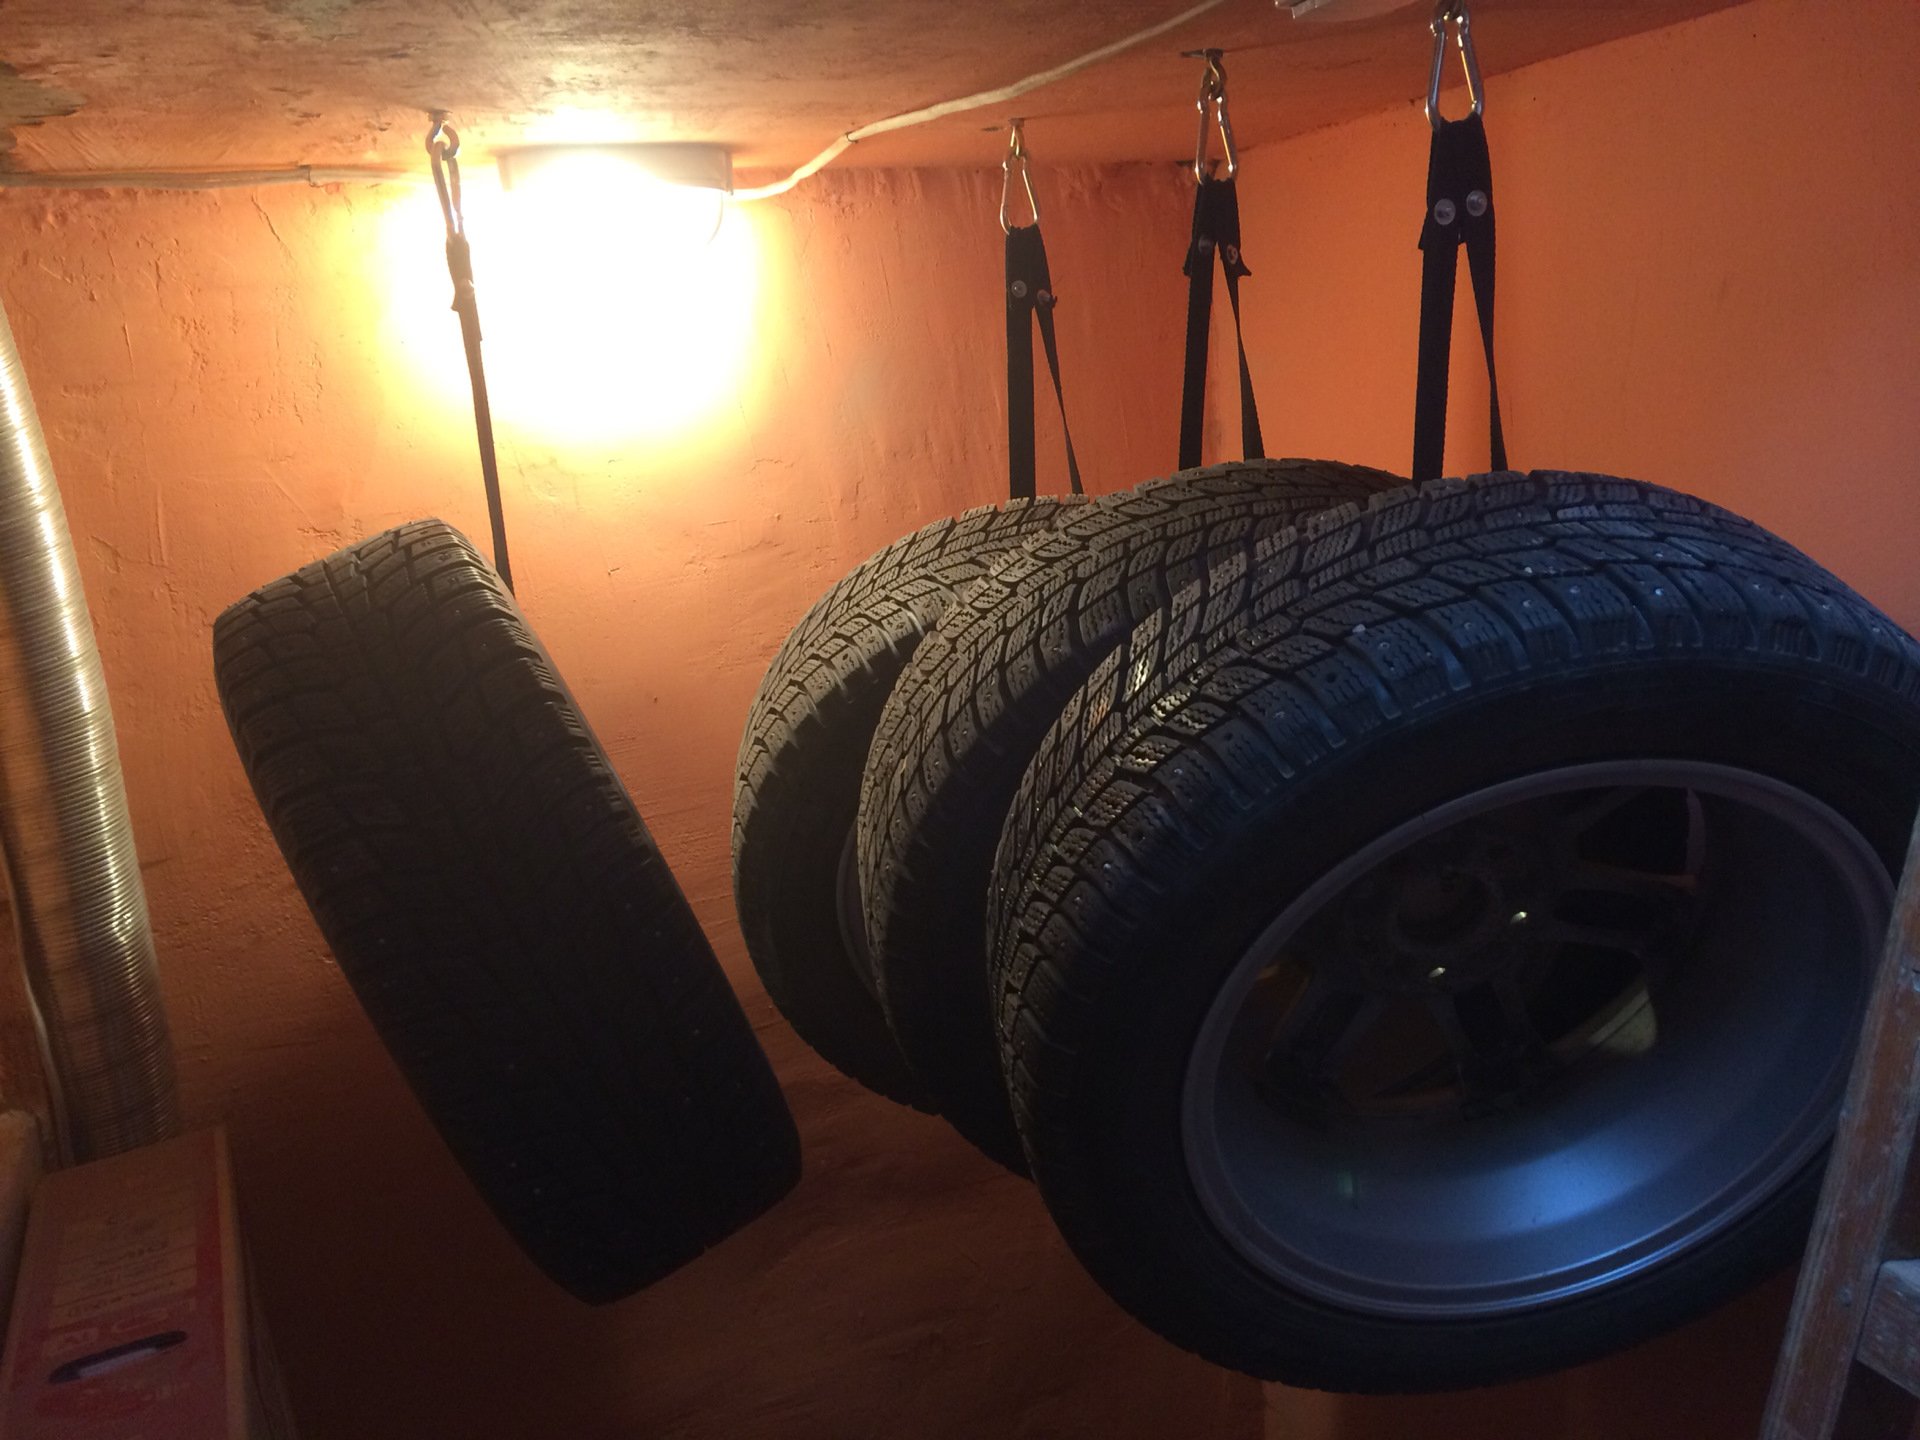 Купить шины гараж. Колеса в гараже. Хранение колес в гараже. Крючки для хранения шин. Крепление для хранения колес.